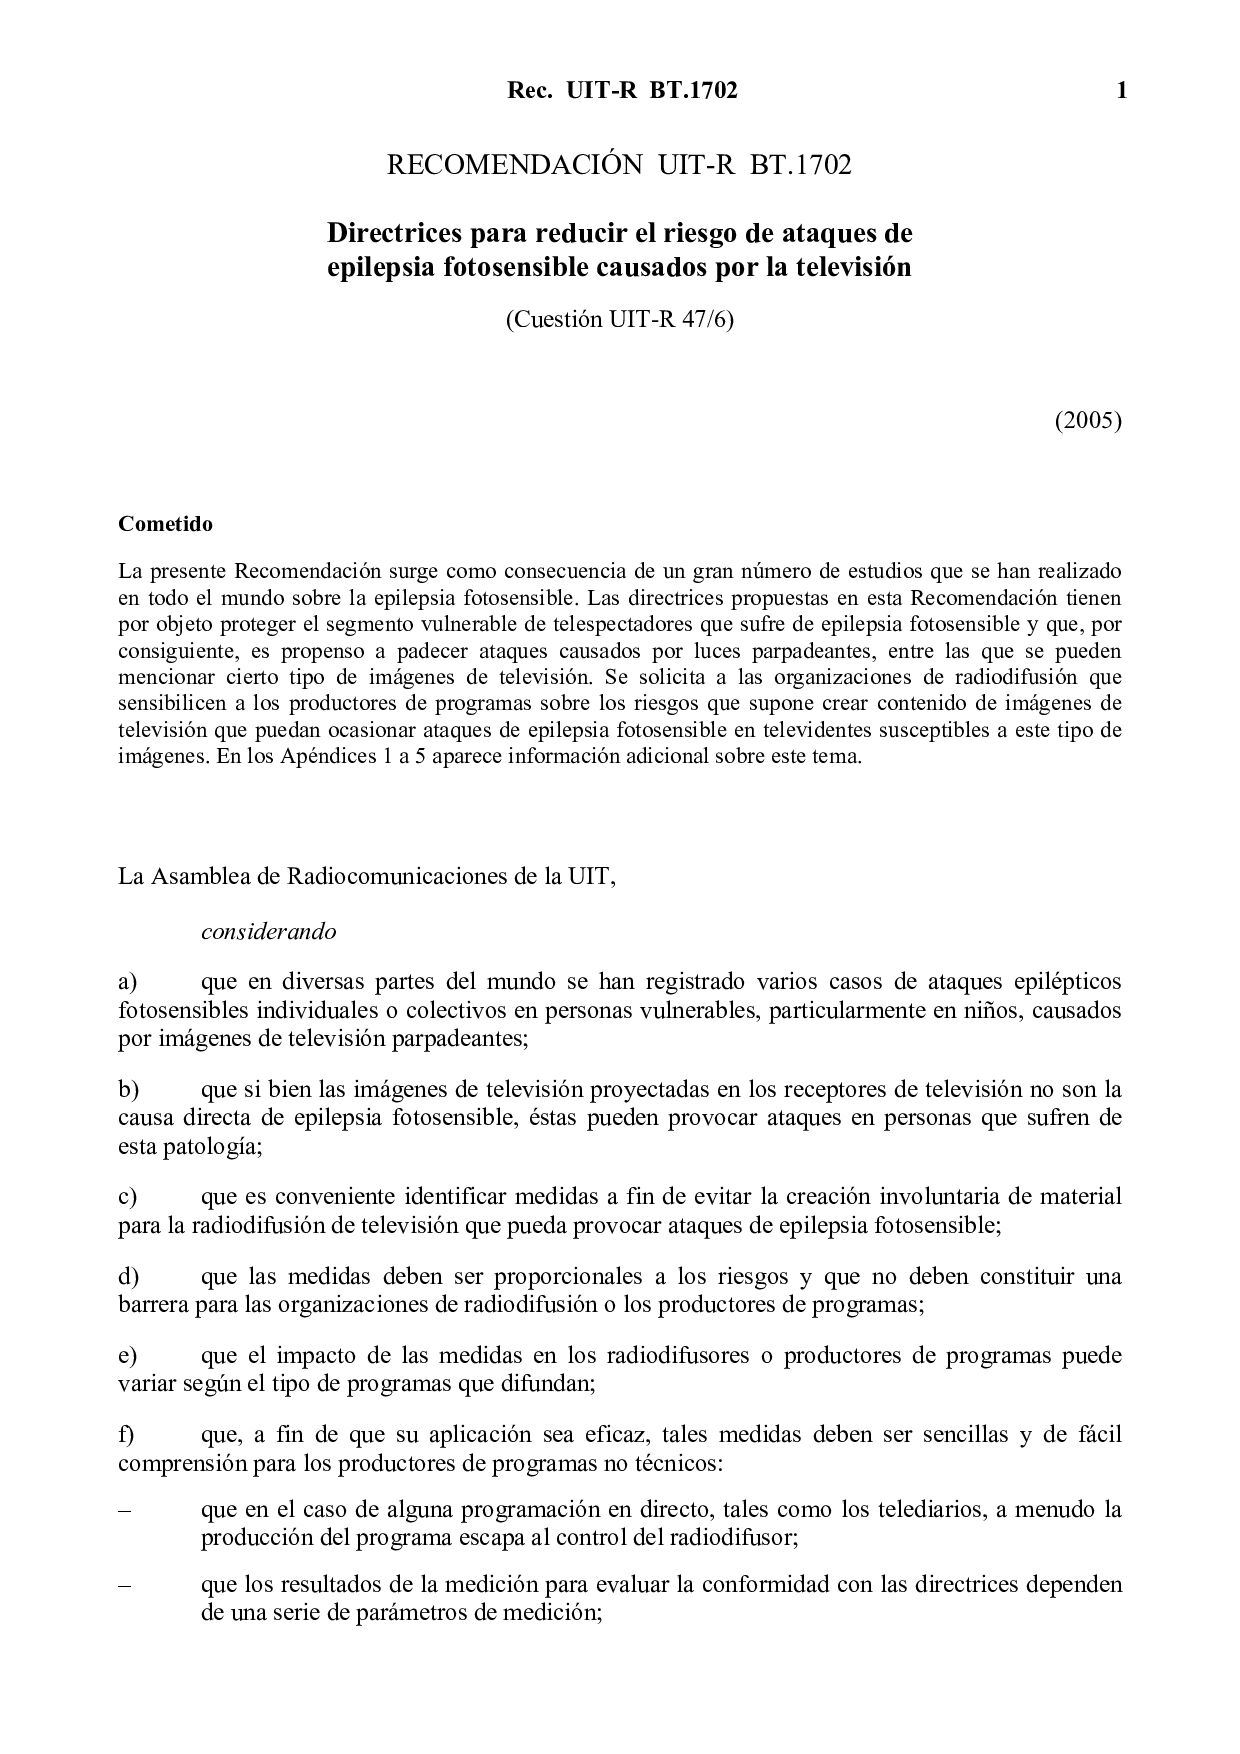 ITU-R BT.1702 SPANISH-2005